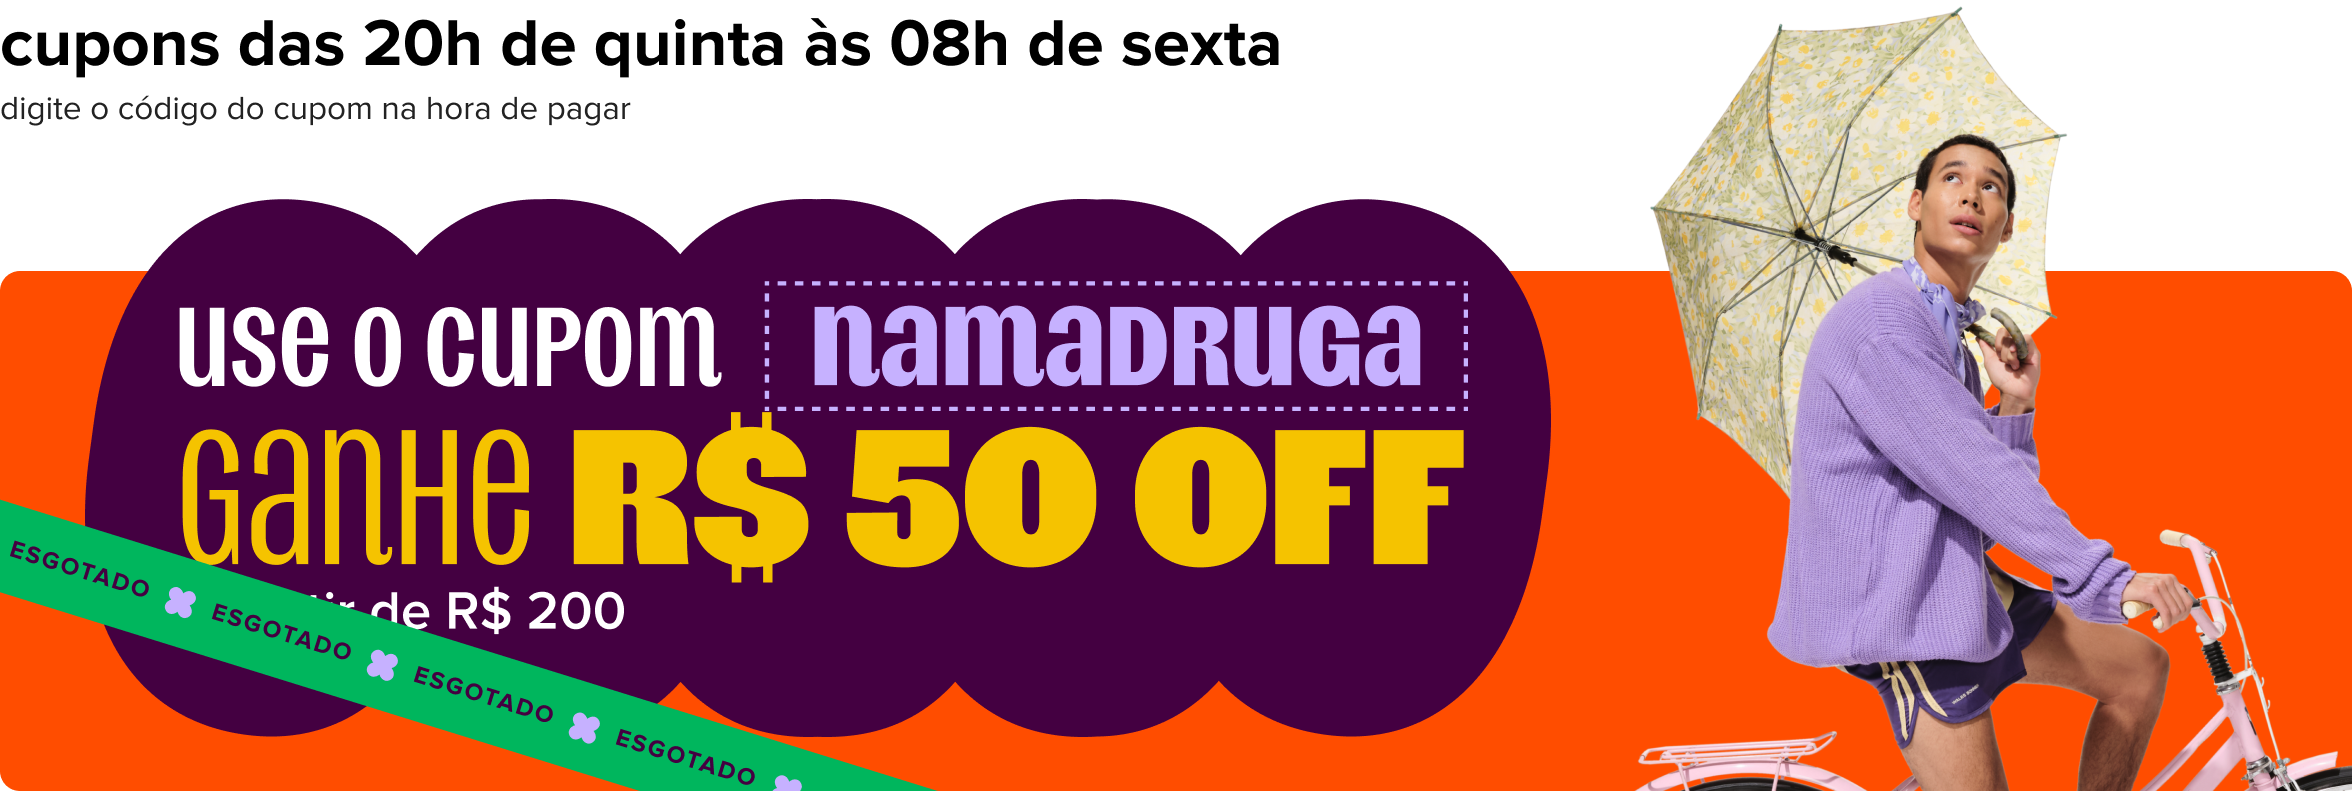 imagem destaca o texto "use o cupom namadruga, ganhe 50 reais off a partir de 200 reais para os 150 primeiros".